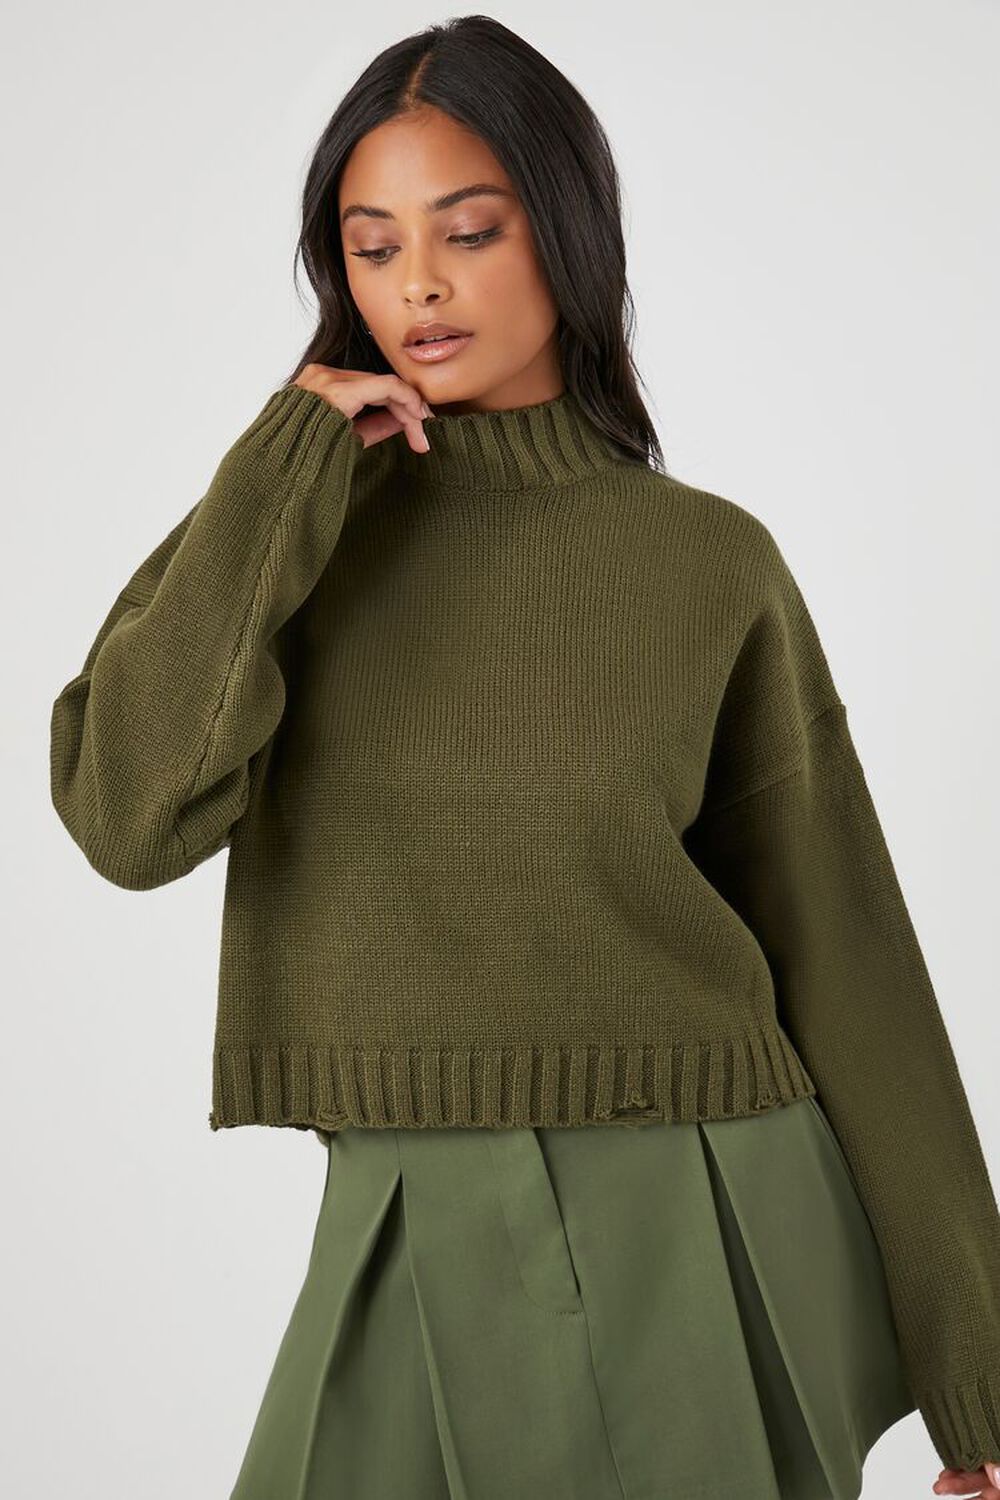 

Рваный свитер с воротником-стойкой Forever 21, оливковый, Зеленый